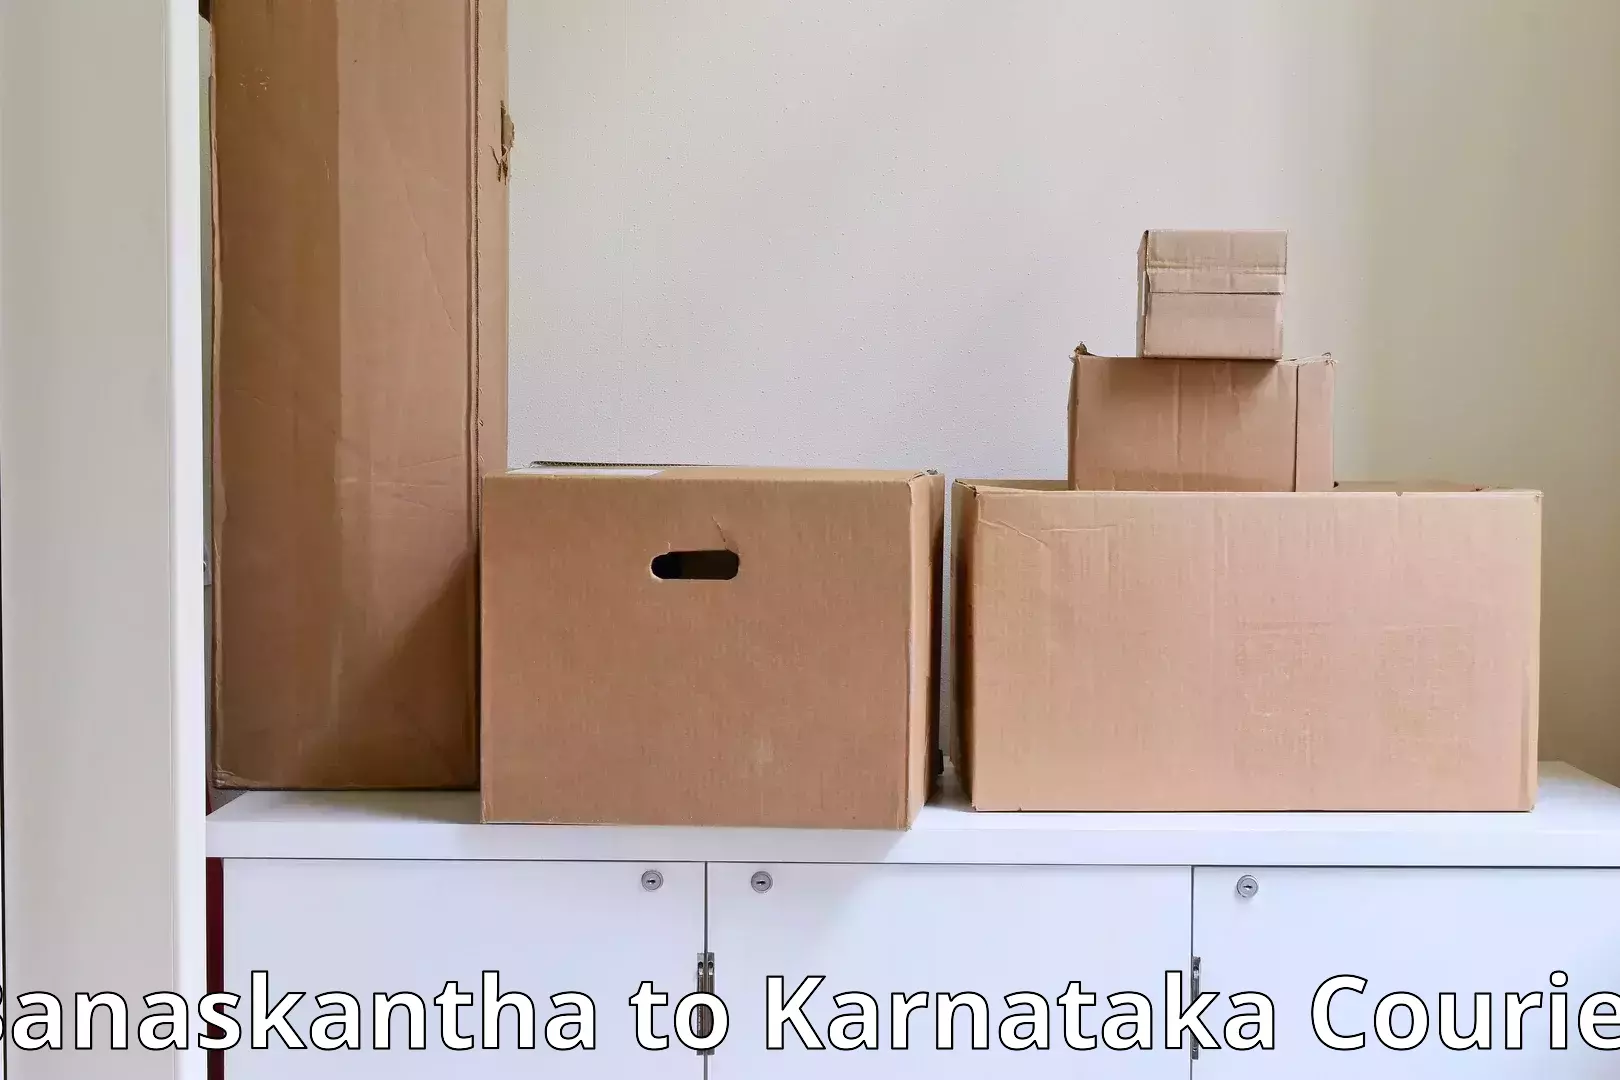 Affordable relocation solutions Banaskantha to Karnataka